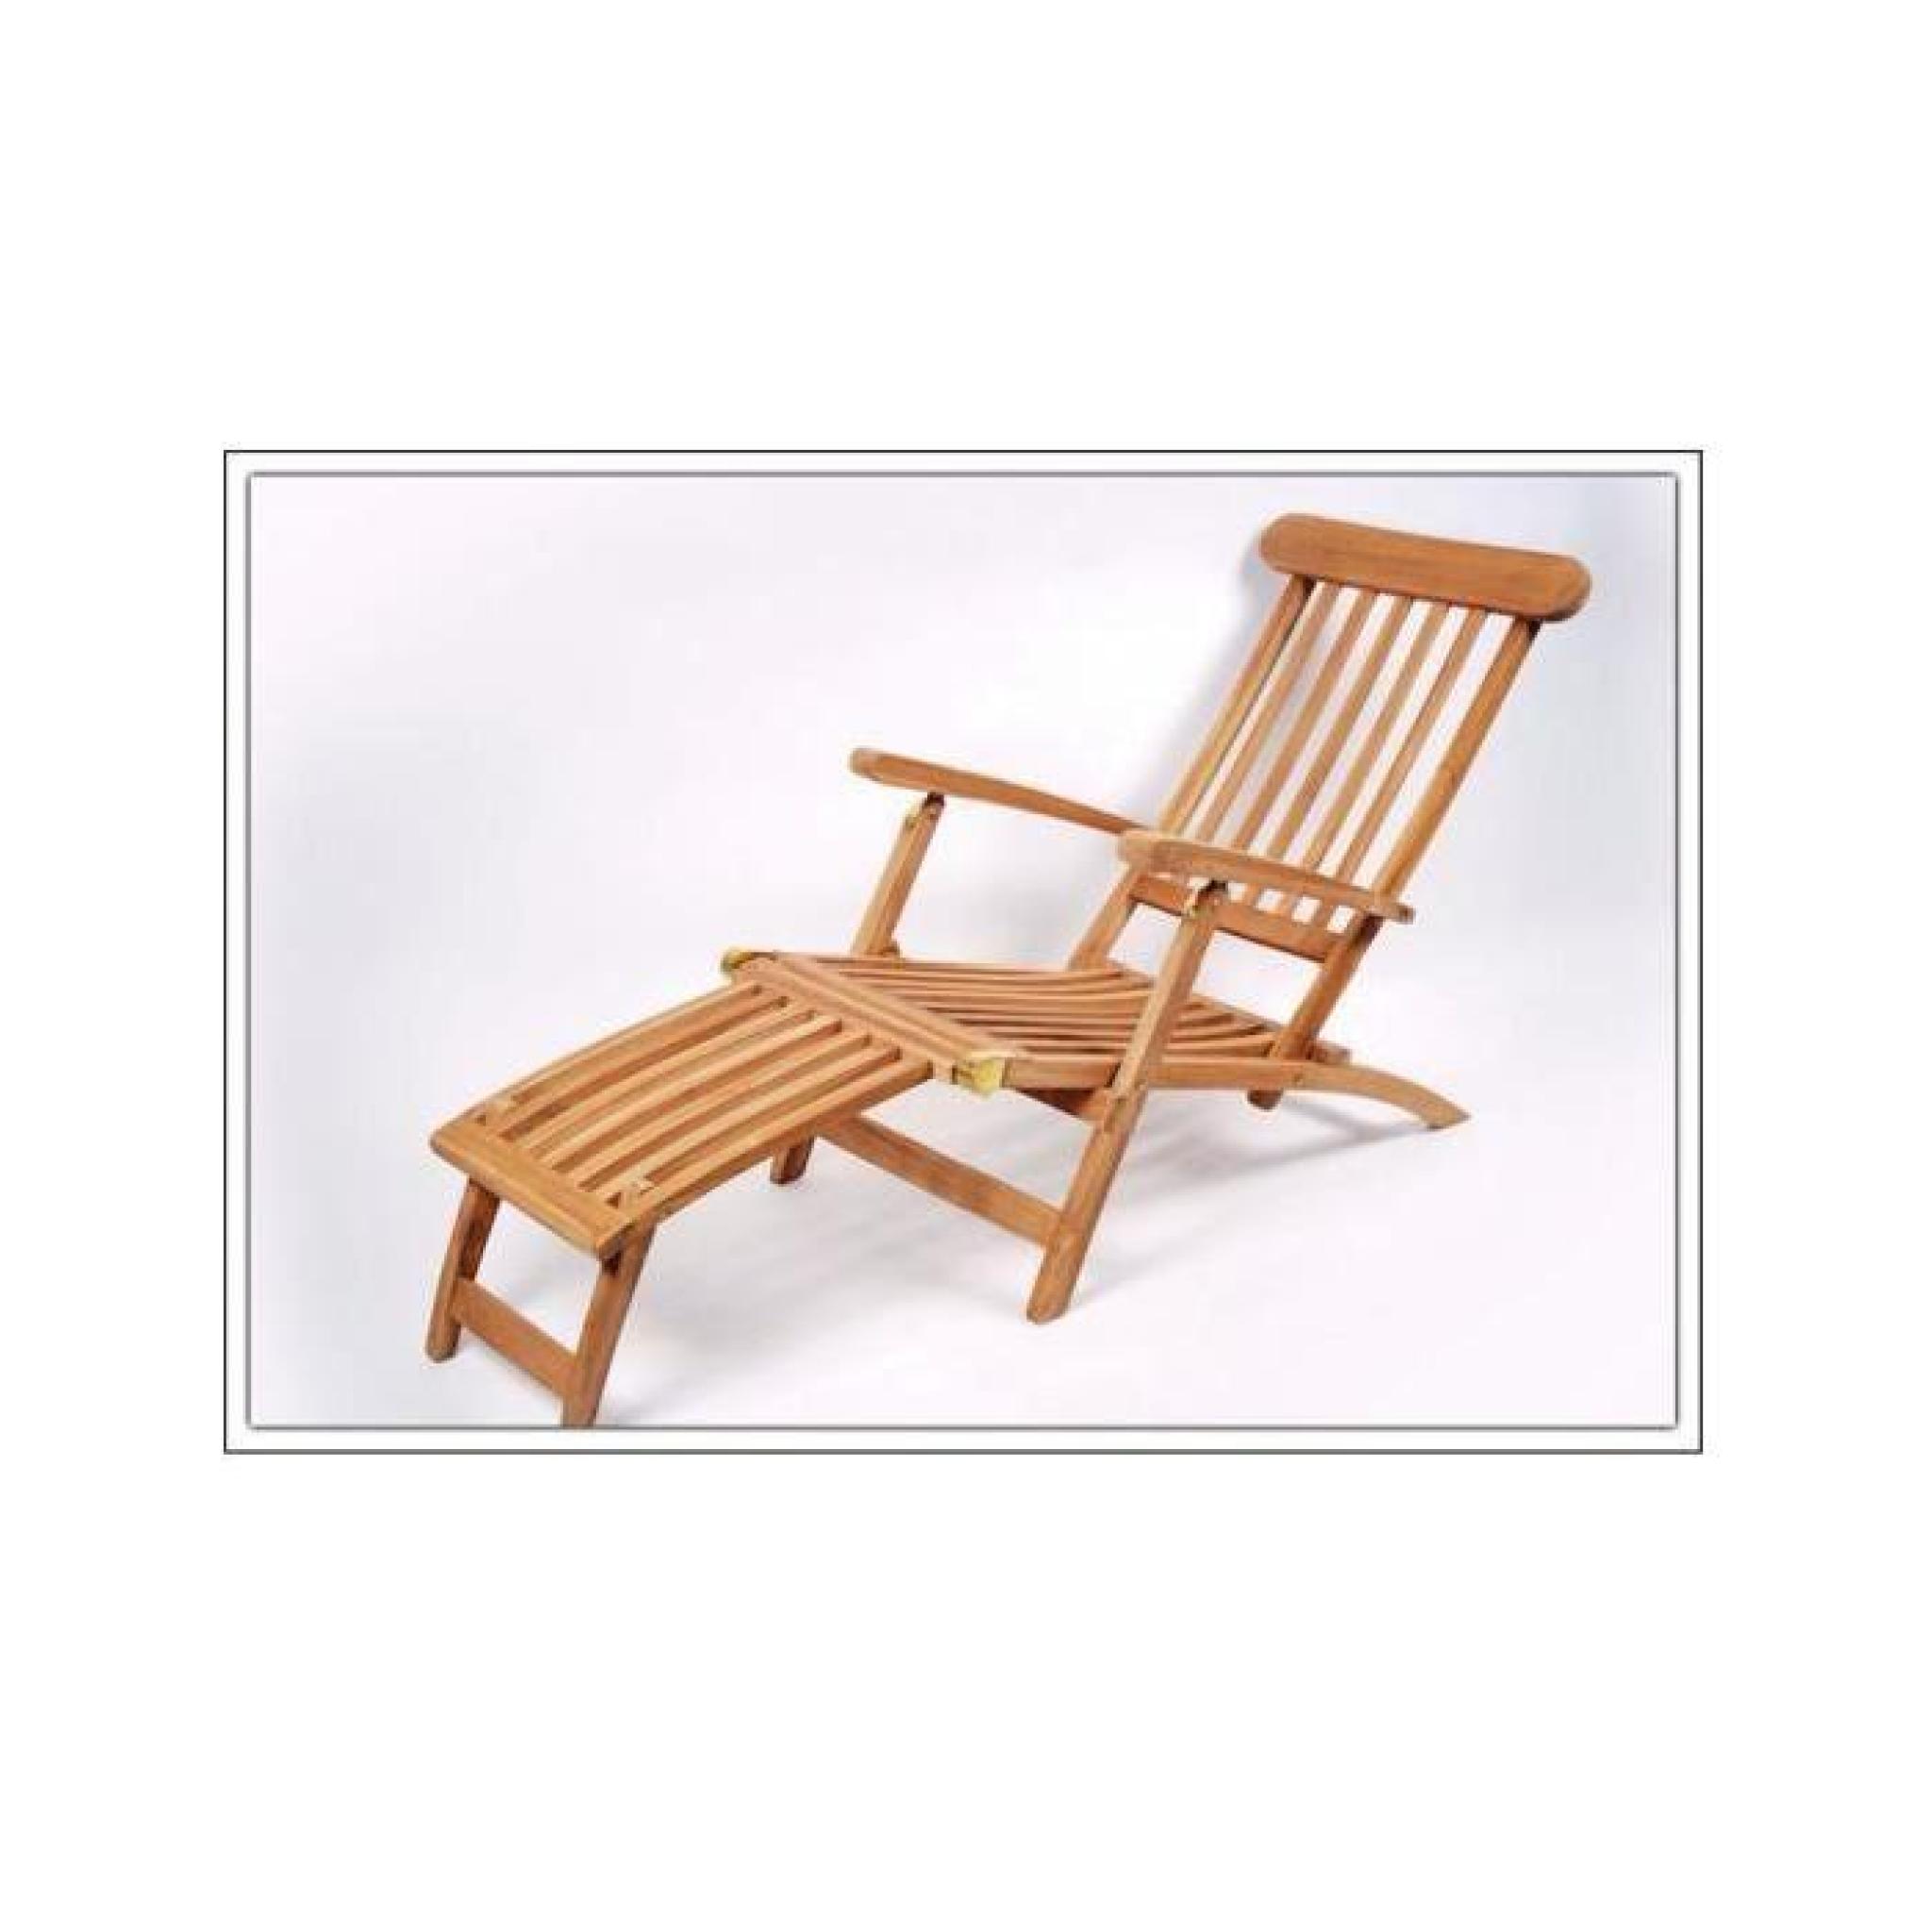 Special-trends - Teck Deck Chair pliables 190 cm x 90 cm x 58 cm